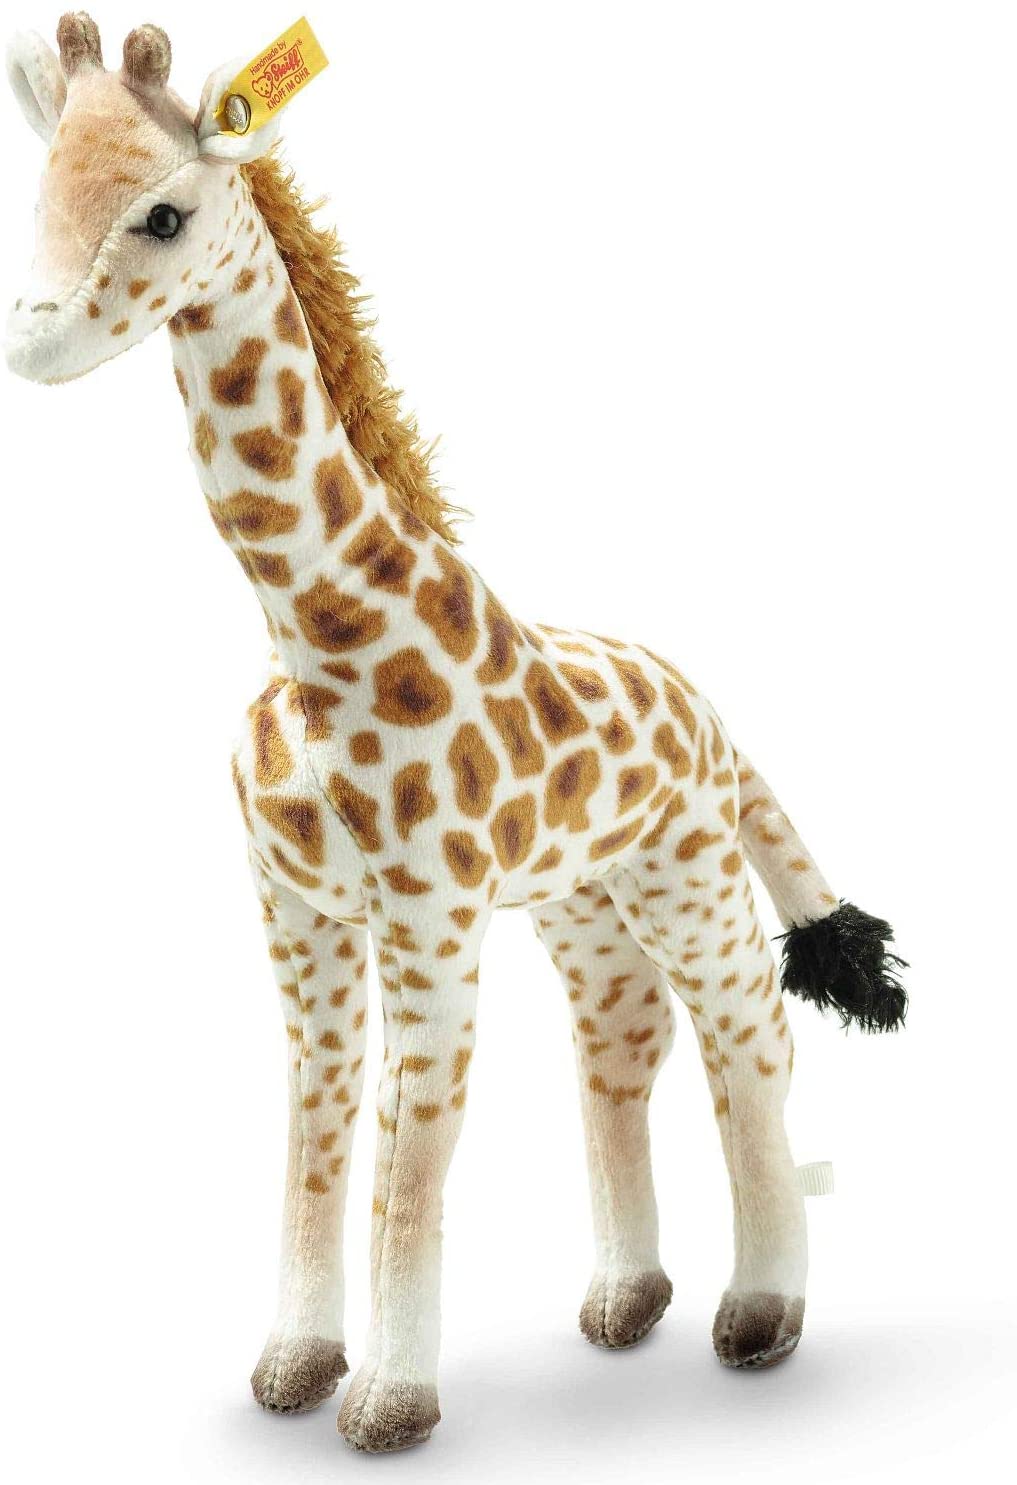 Steiff Kuscheltier Massai Giraffe Magda, National Geographic Wildtier, Süßes Stofftier, Jungen, Mädchen & Babys ab 0 Monaten, Plüschtier, 26 cm, 024412